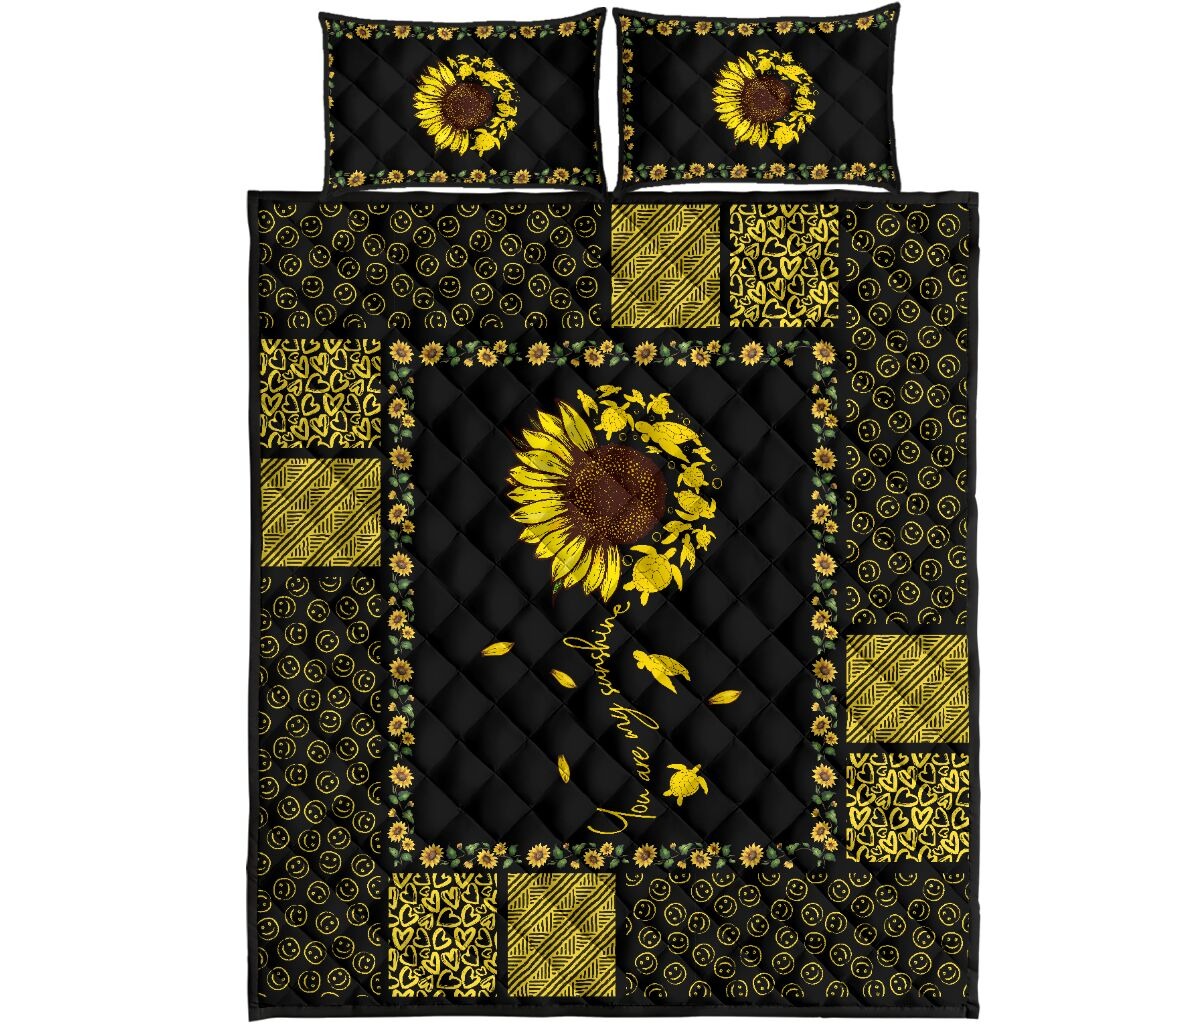 Sunflower sunshine turtle quilt bedding set 4